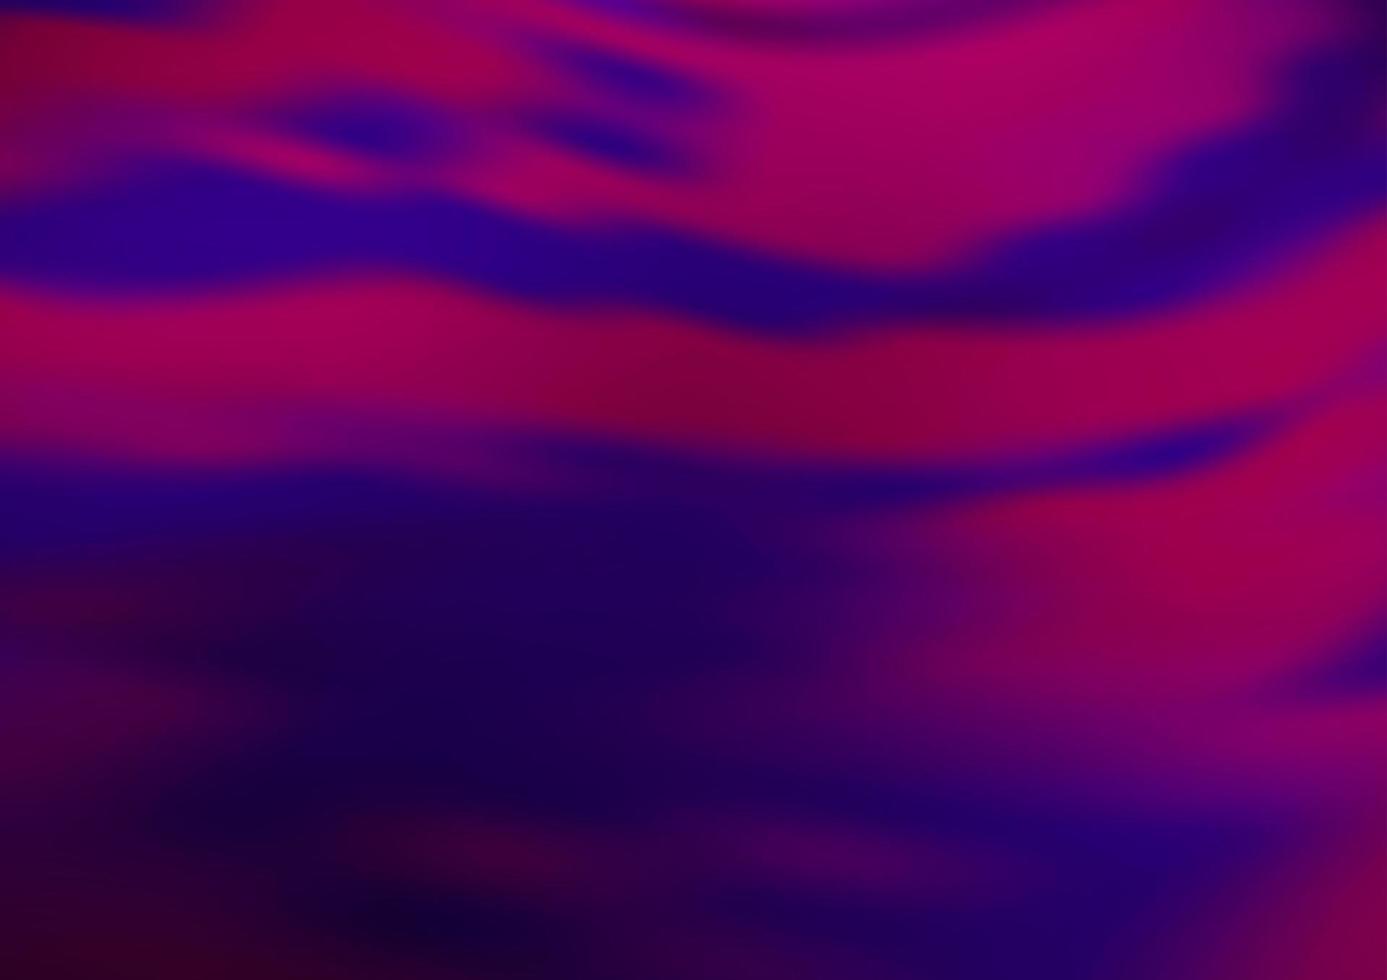 dunkelvioletter Vektor verschwommener Glanz abstrakter Hintergrund.